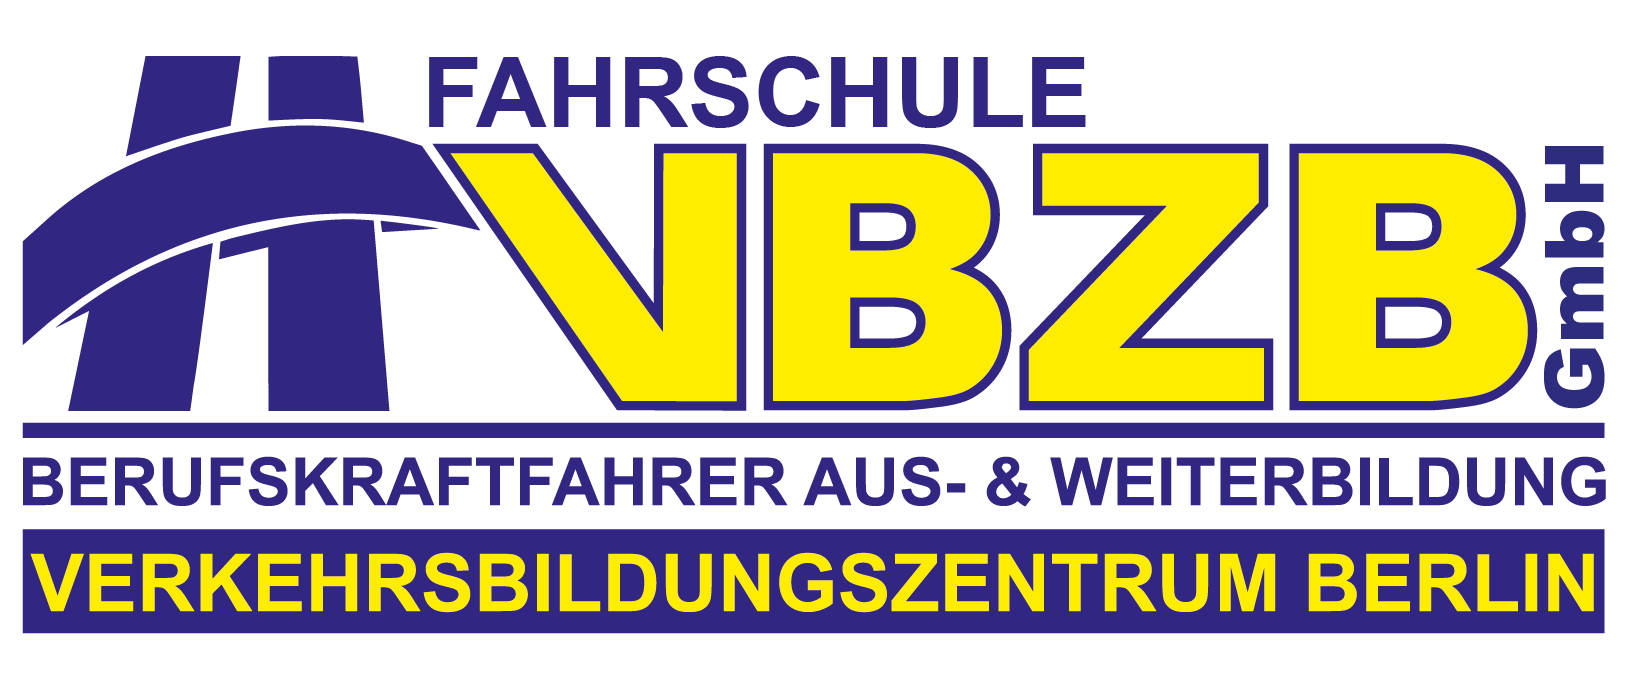 FAHRSCHULE VBZB Logo